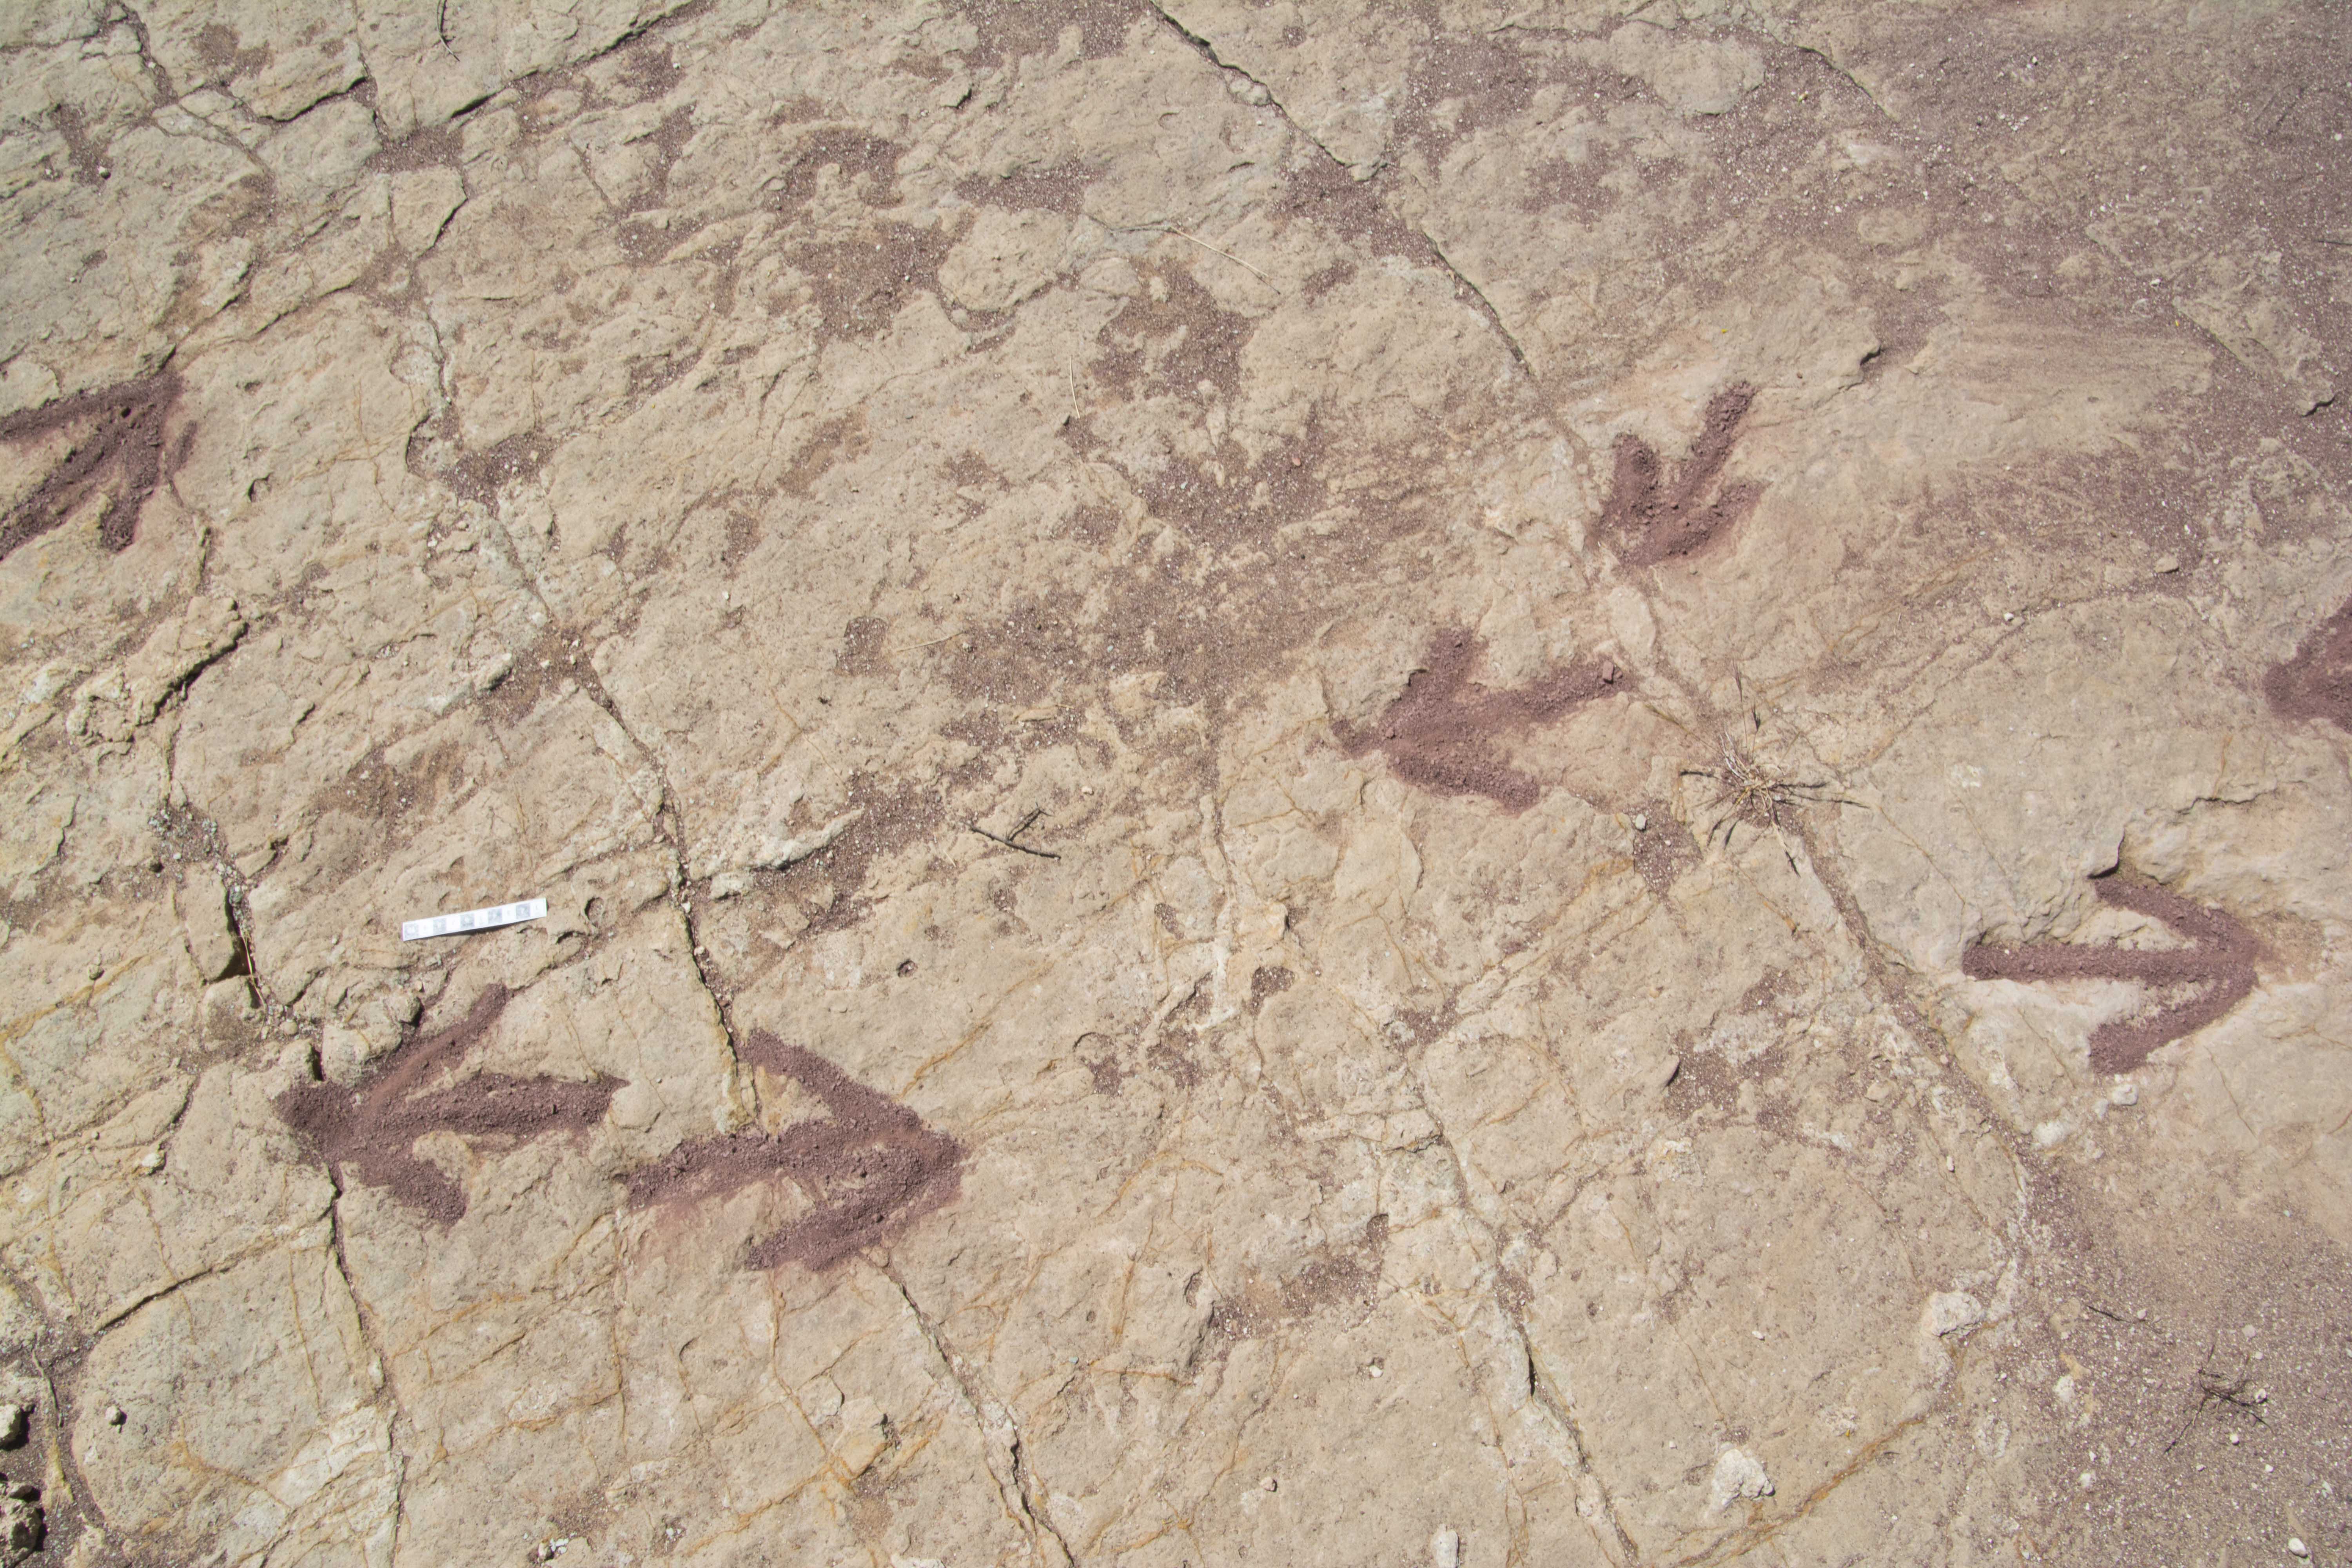 Theropod footprints